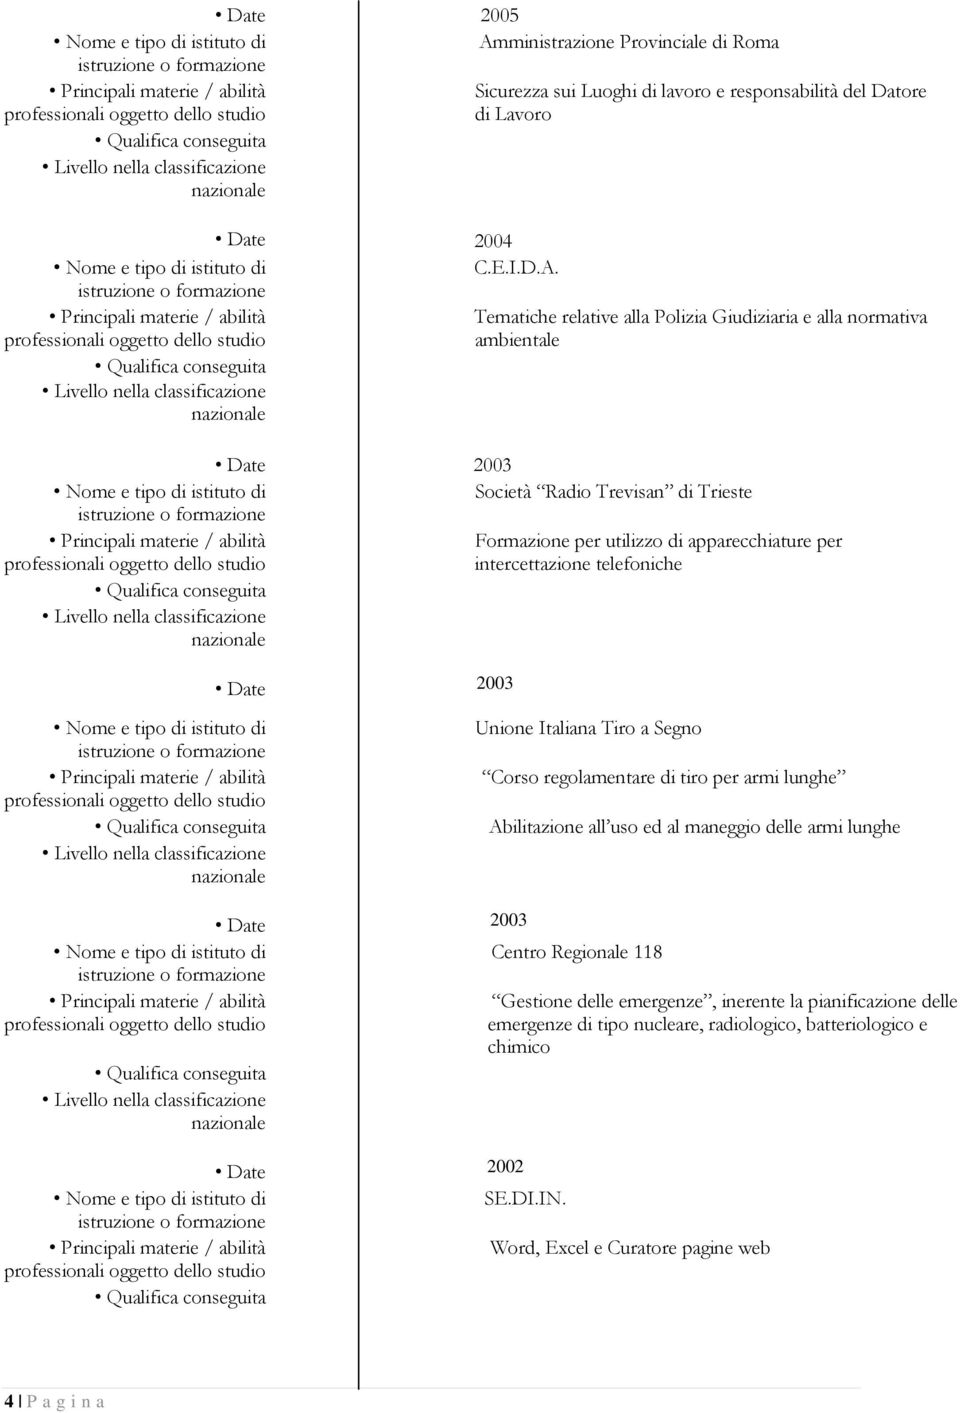 Tematiche relative alla Polizia Giudiziaria e alla normativa ambientale Date 2003 Società Radio Trevisan di Trieste Formazione per utilizzo di apparecchiature per